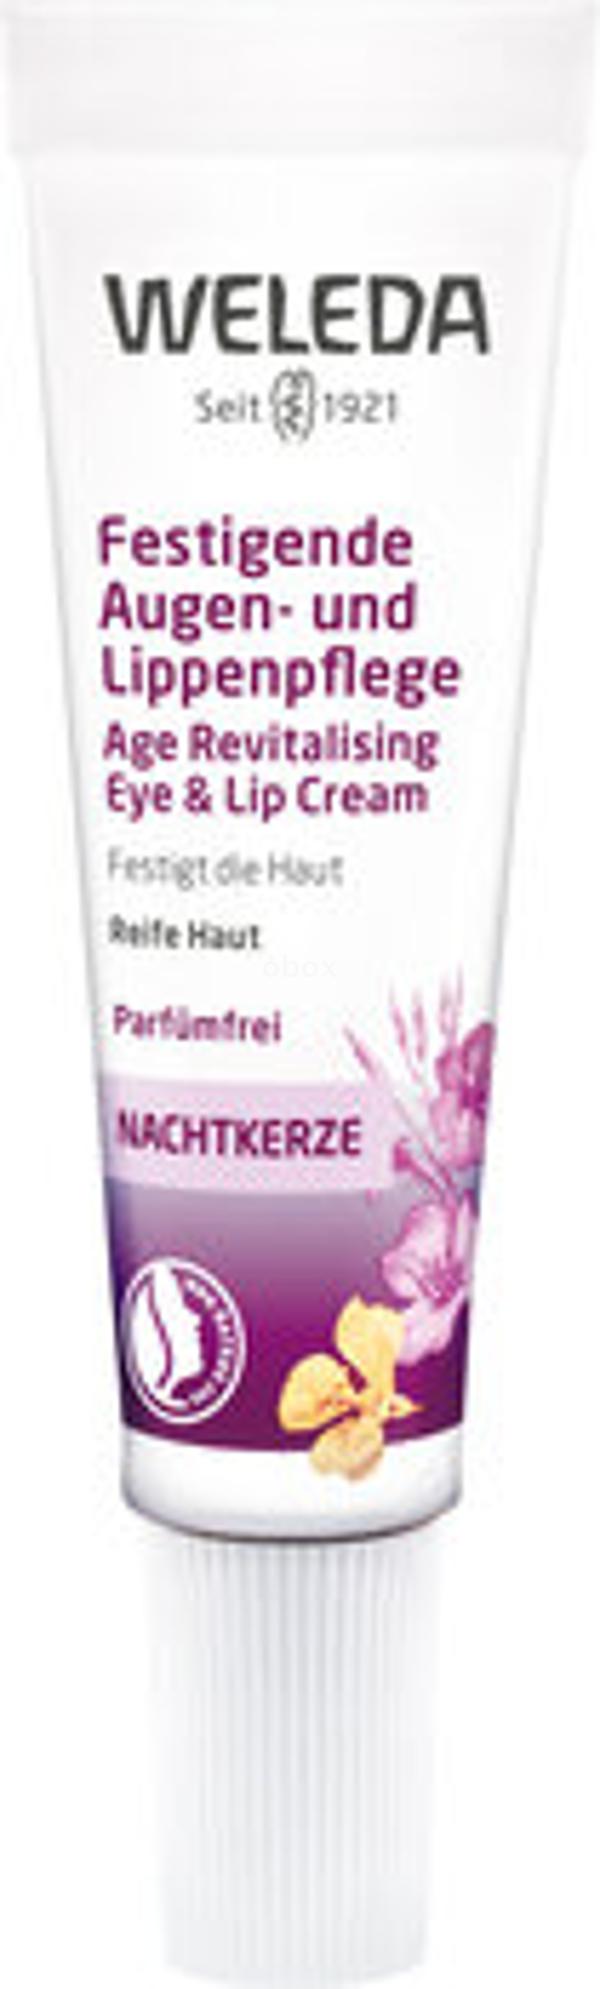 Produktfoto zu Nachtkerze Augen- und Lippenpflege